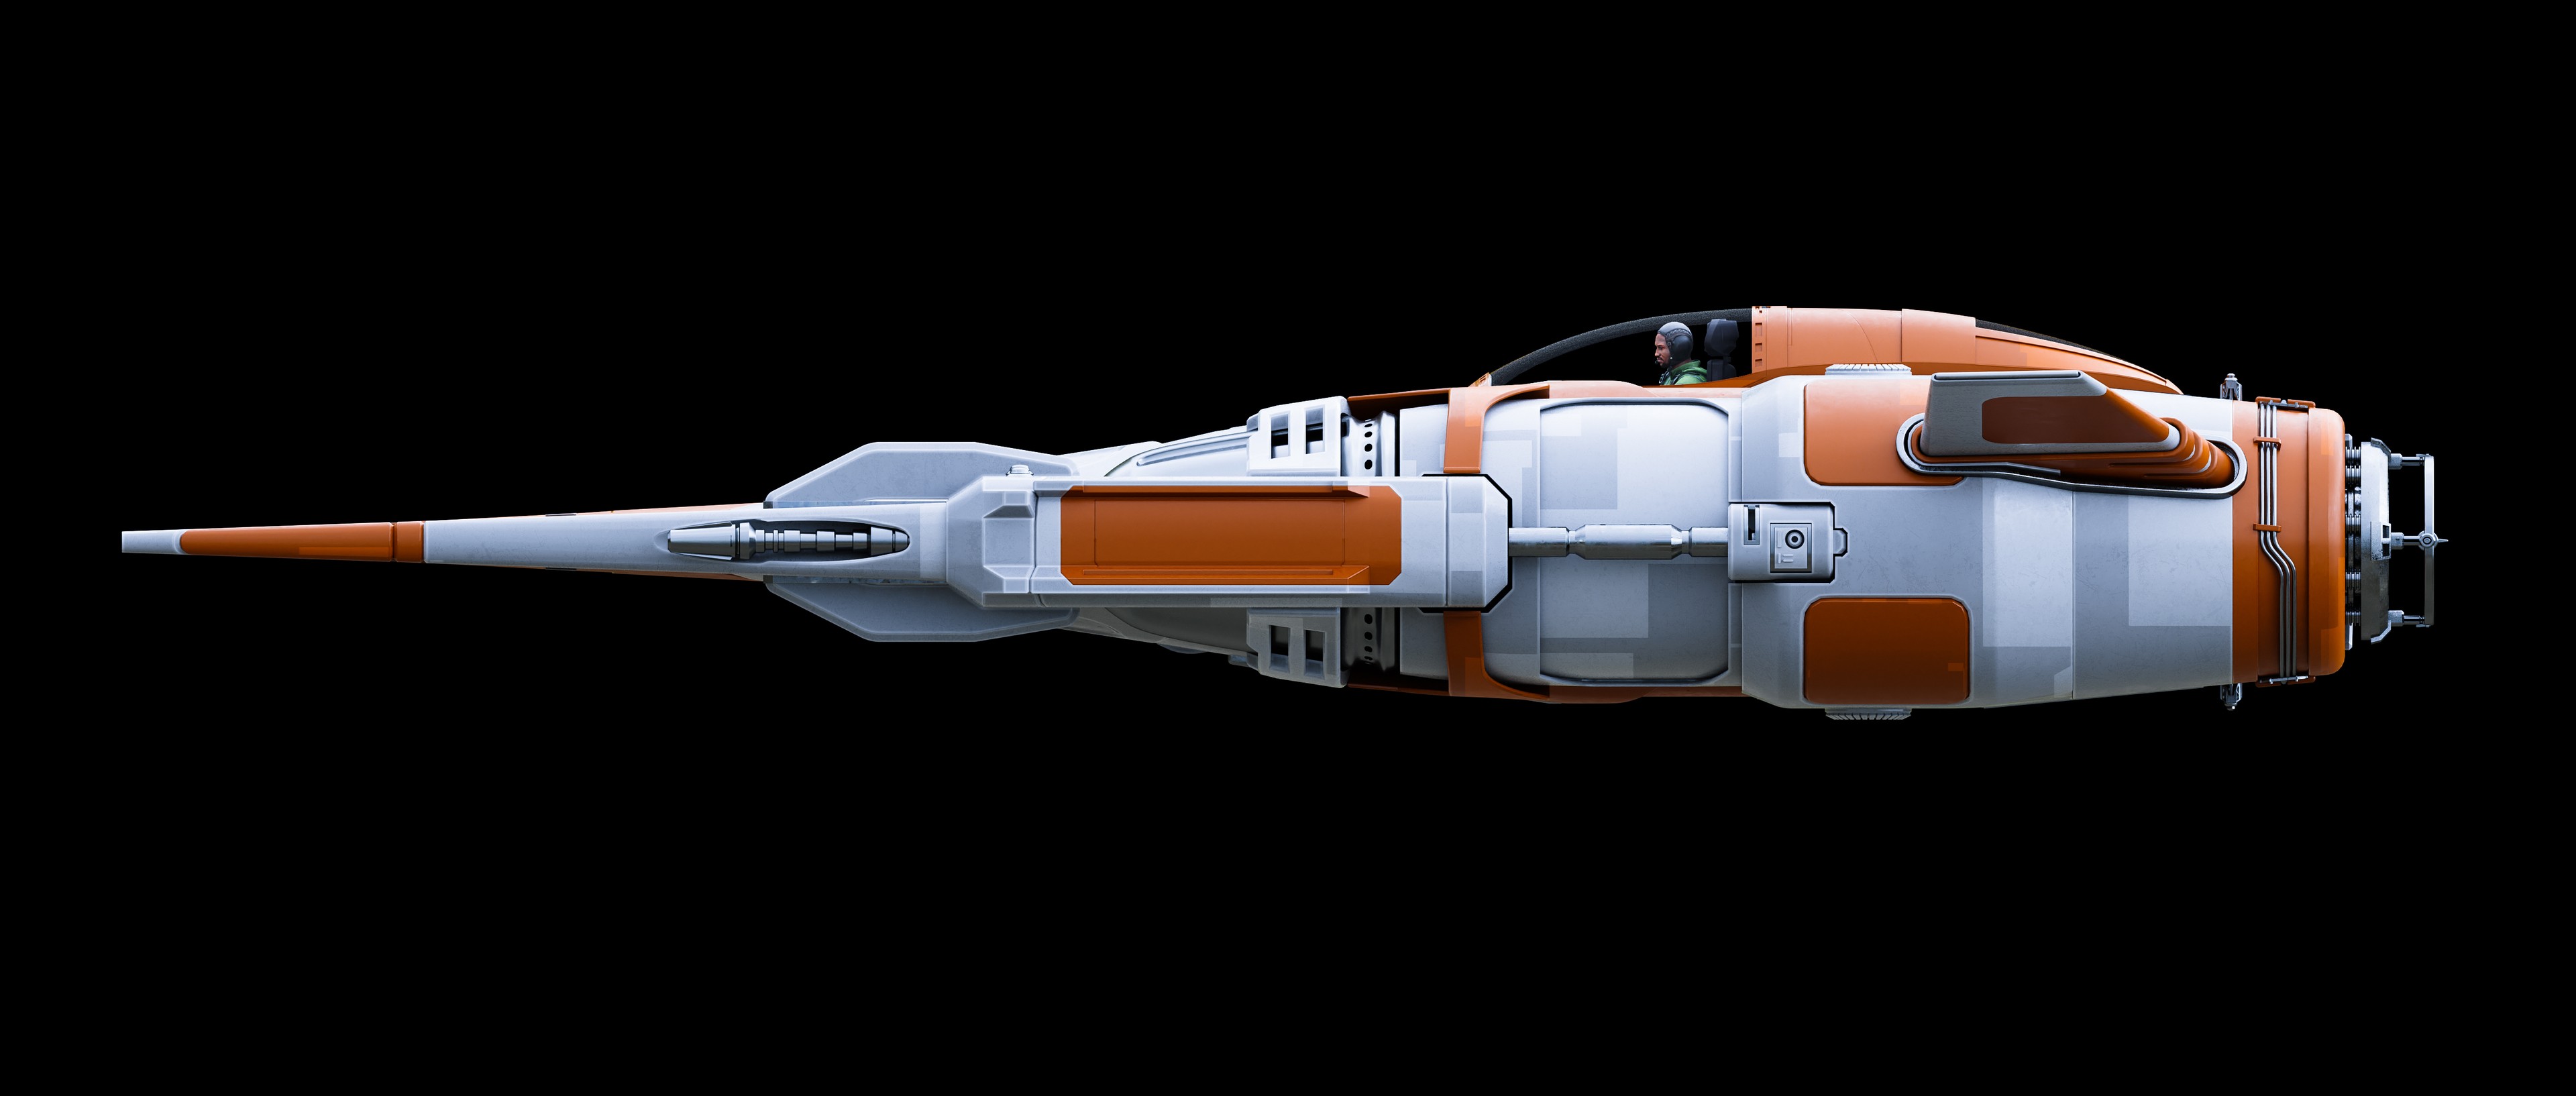 Original Interceptor Spaceship - Layout par Quentin